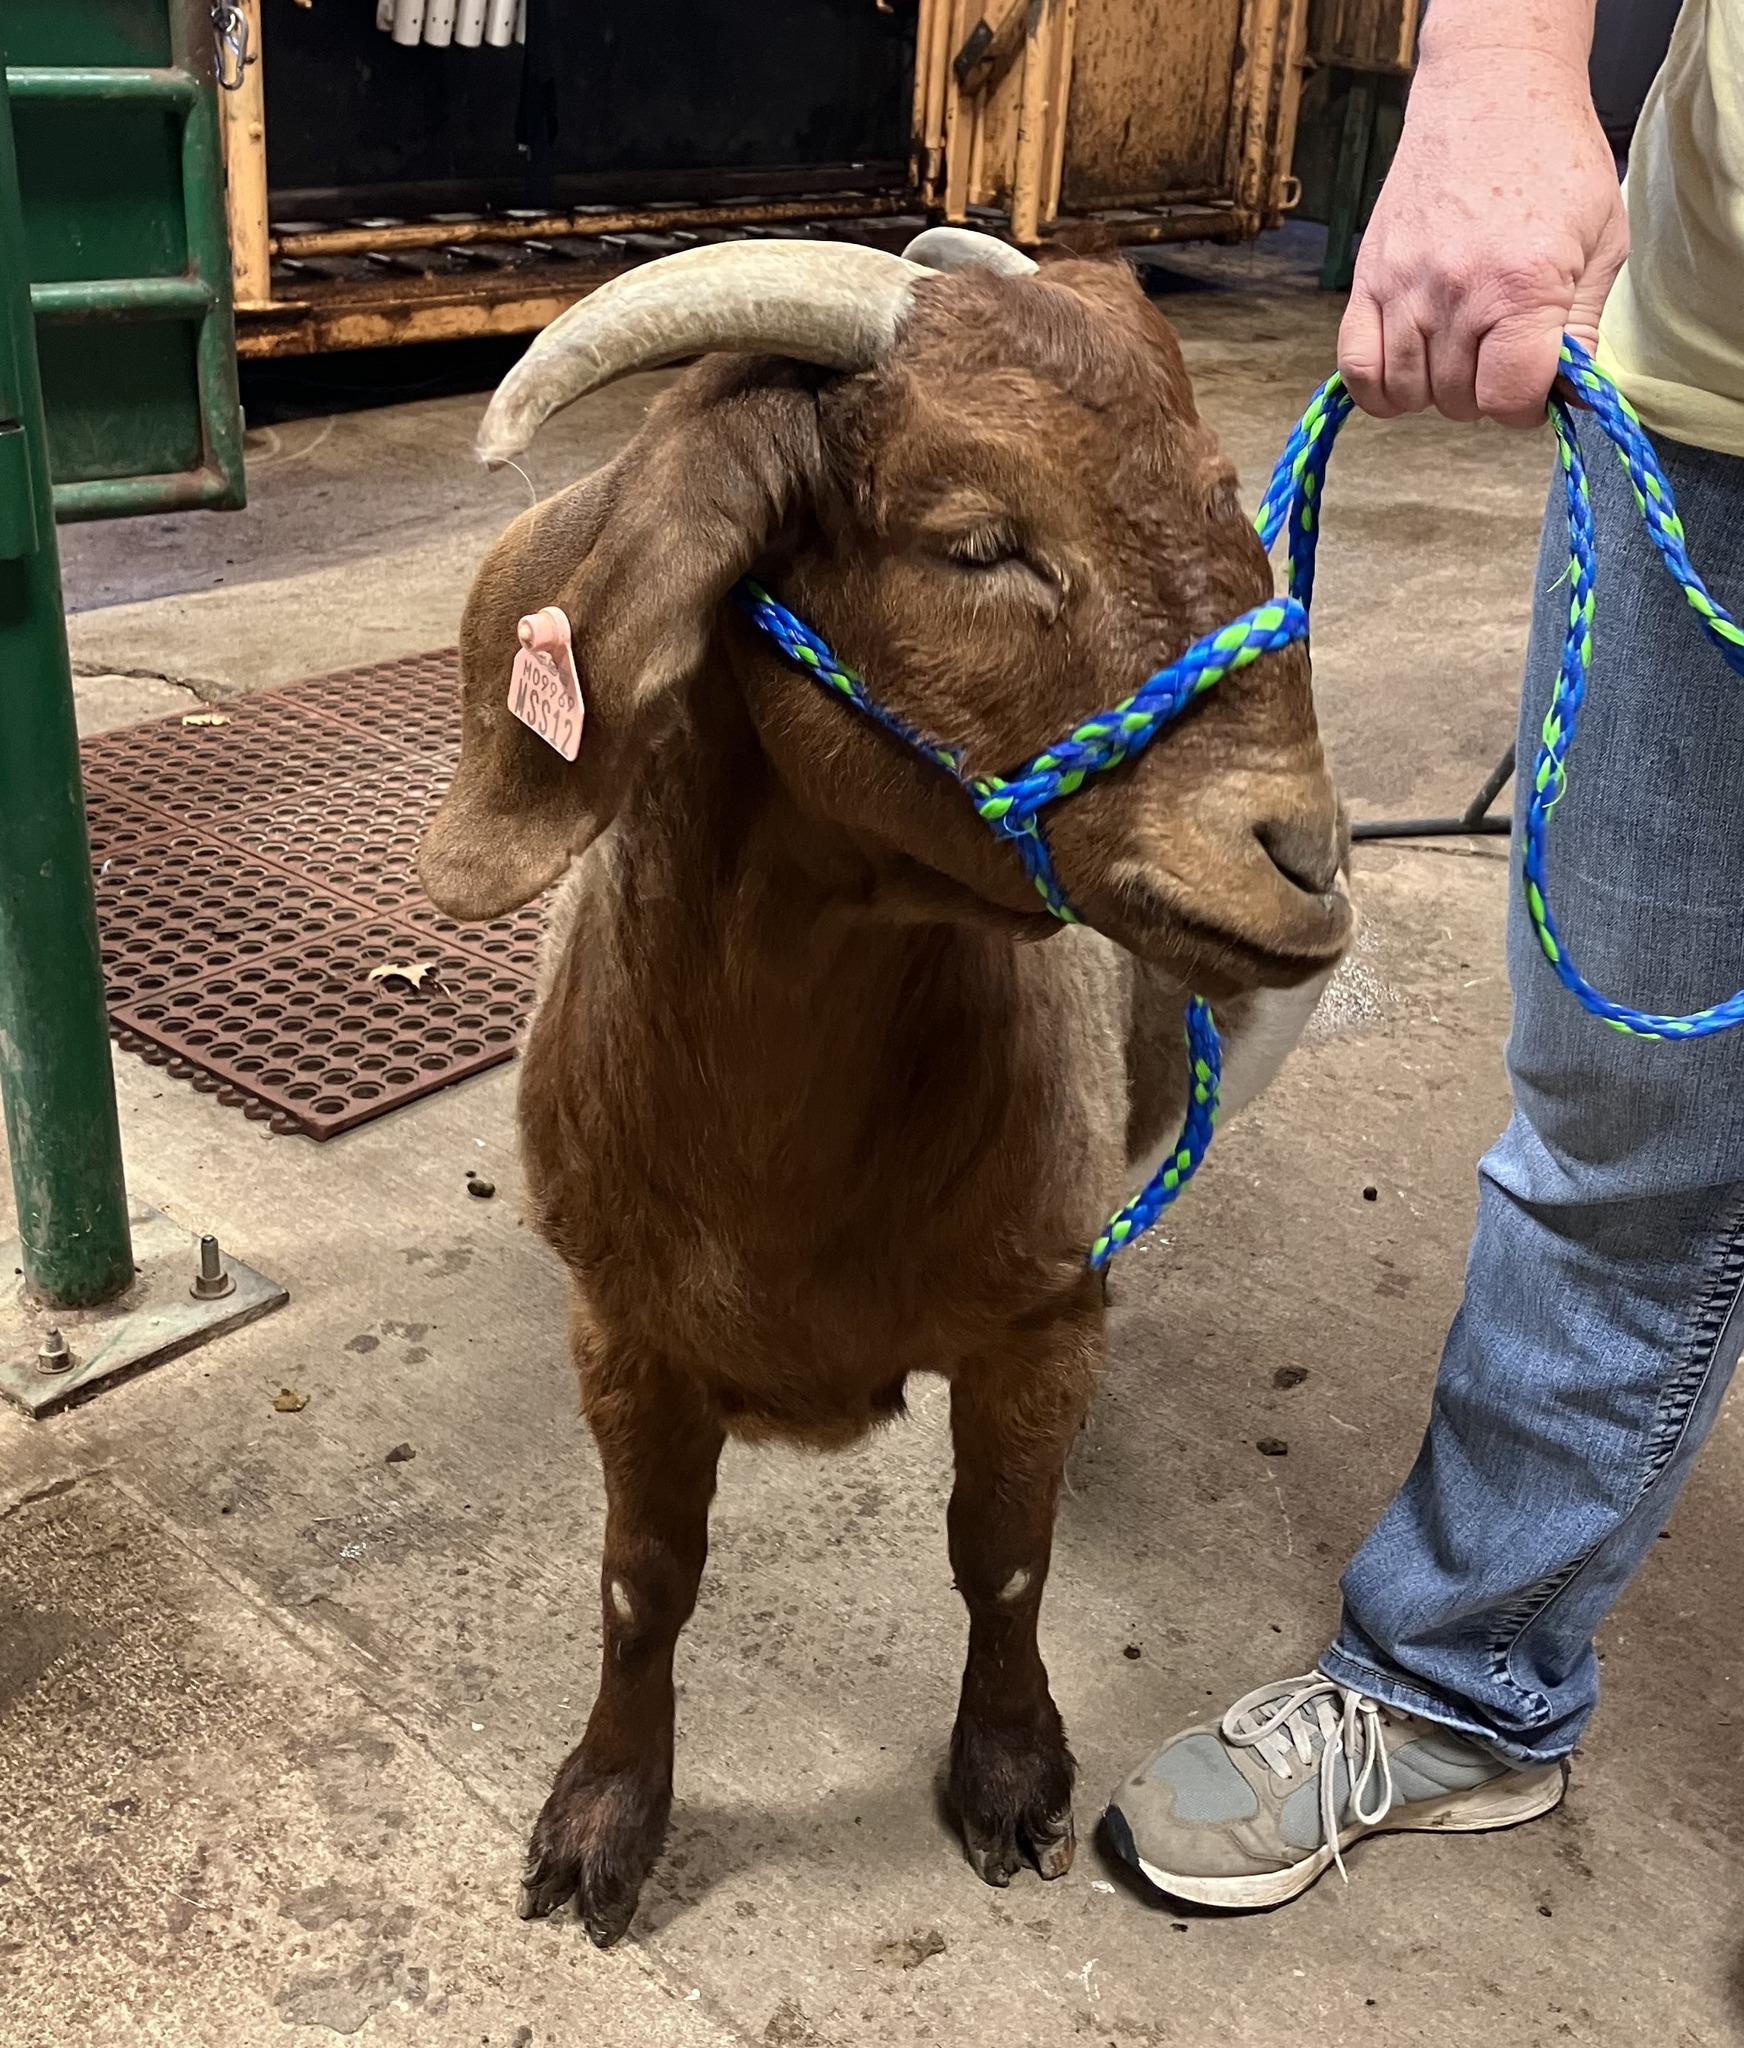 An adorable goat patient